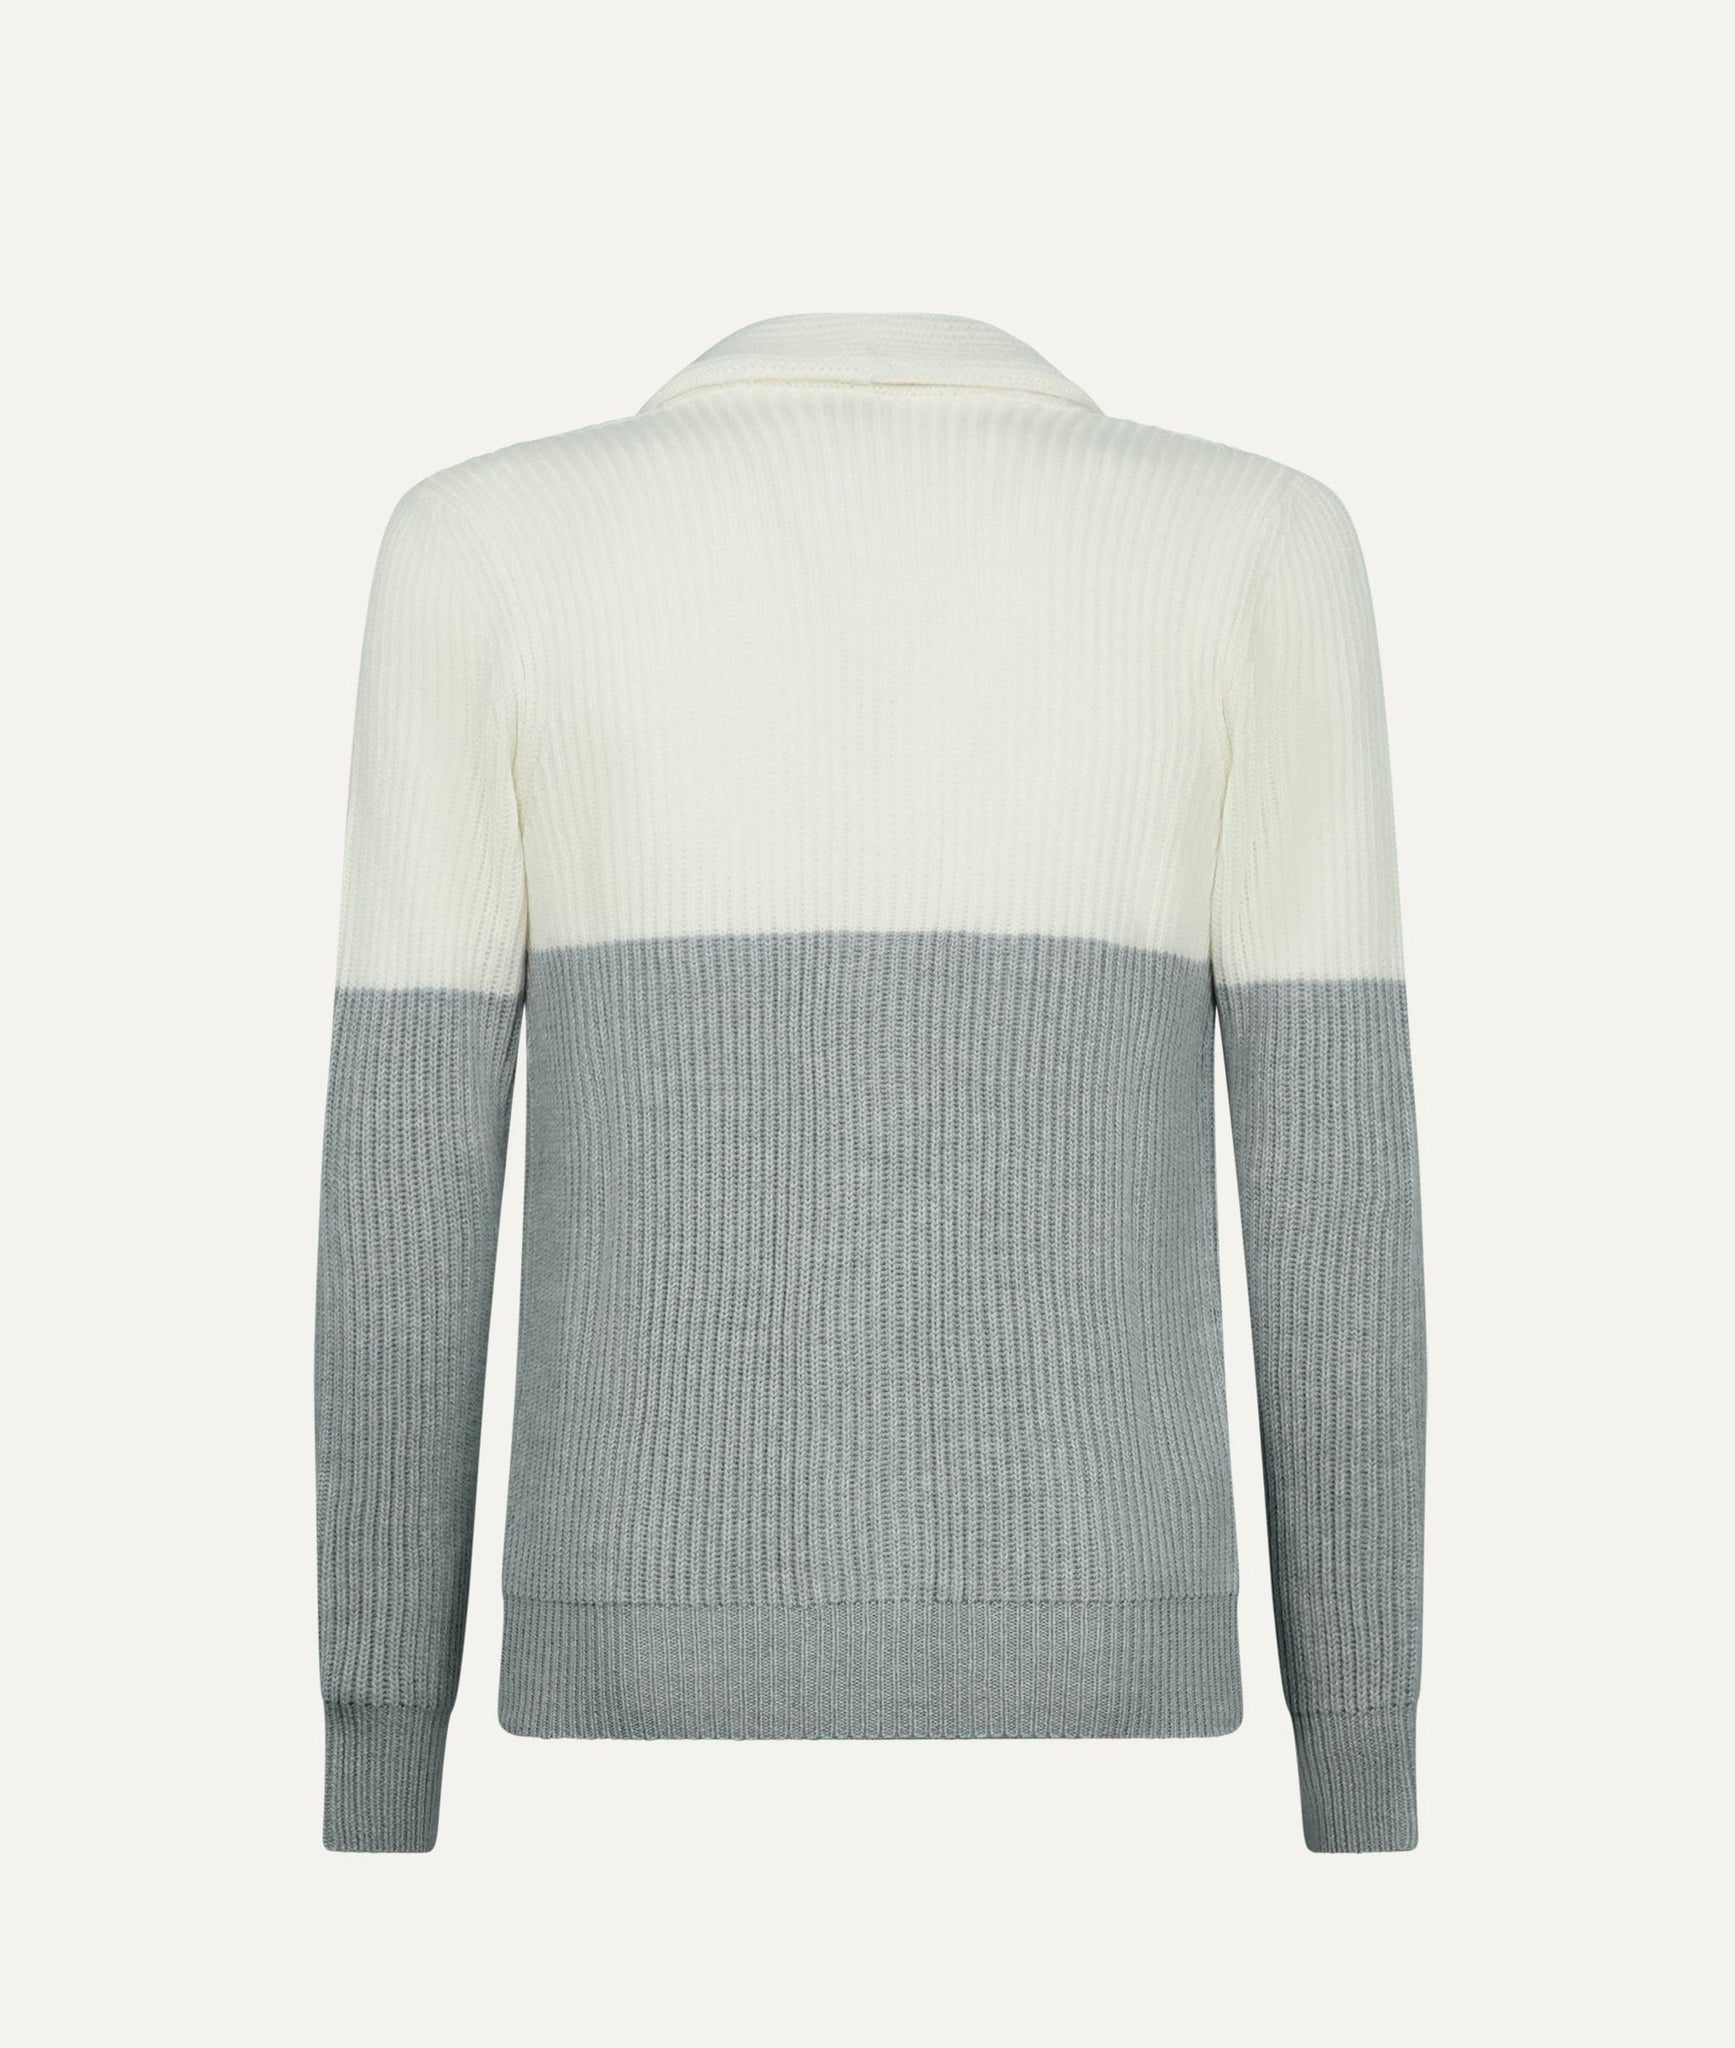 Eleventy - Sweater in Wool